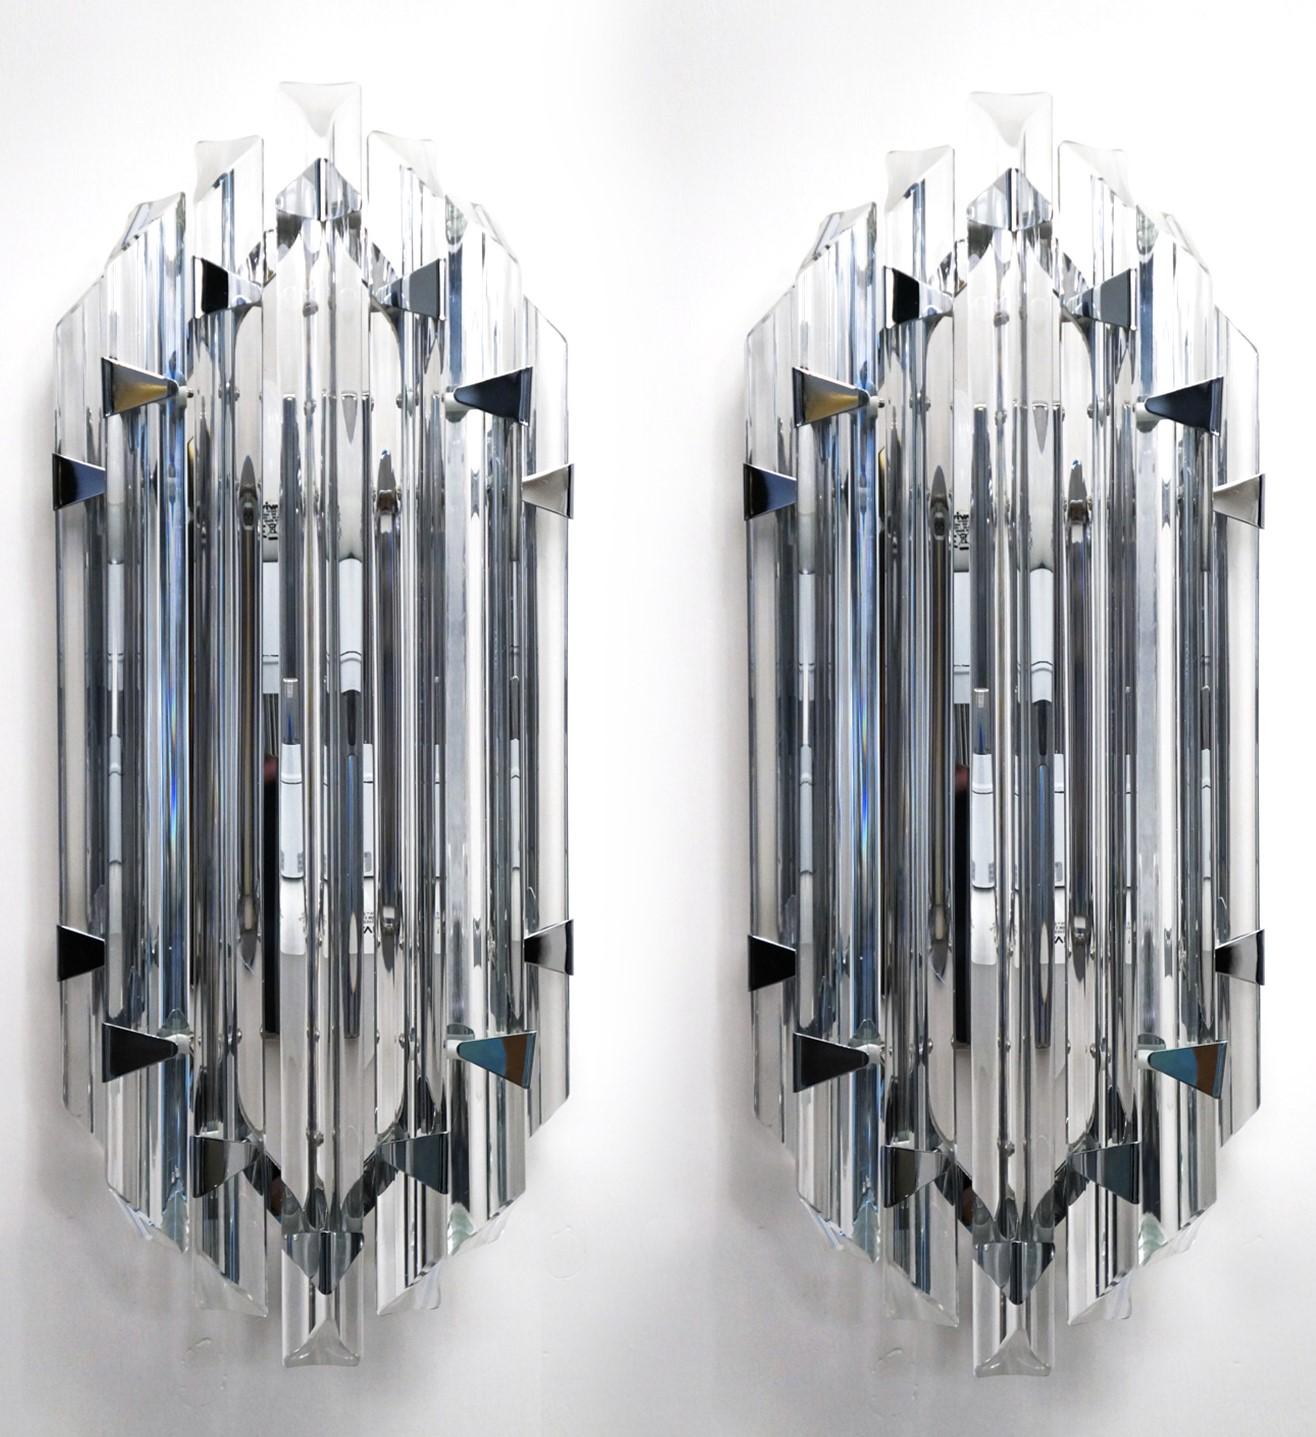 Eine sehr elegante Wandleuchte, die sieben Glaselemente präsentiert, die in das Glas gebogen sind, aber mit weichen und leichten Merkmalen, Farbe Kristall, gebogen sind. 
Entworfen von dem Meister Alberto Dona 'im Jahr 1990.

Die Produkte sind